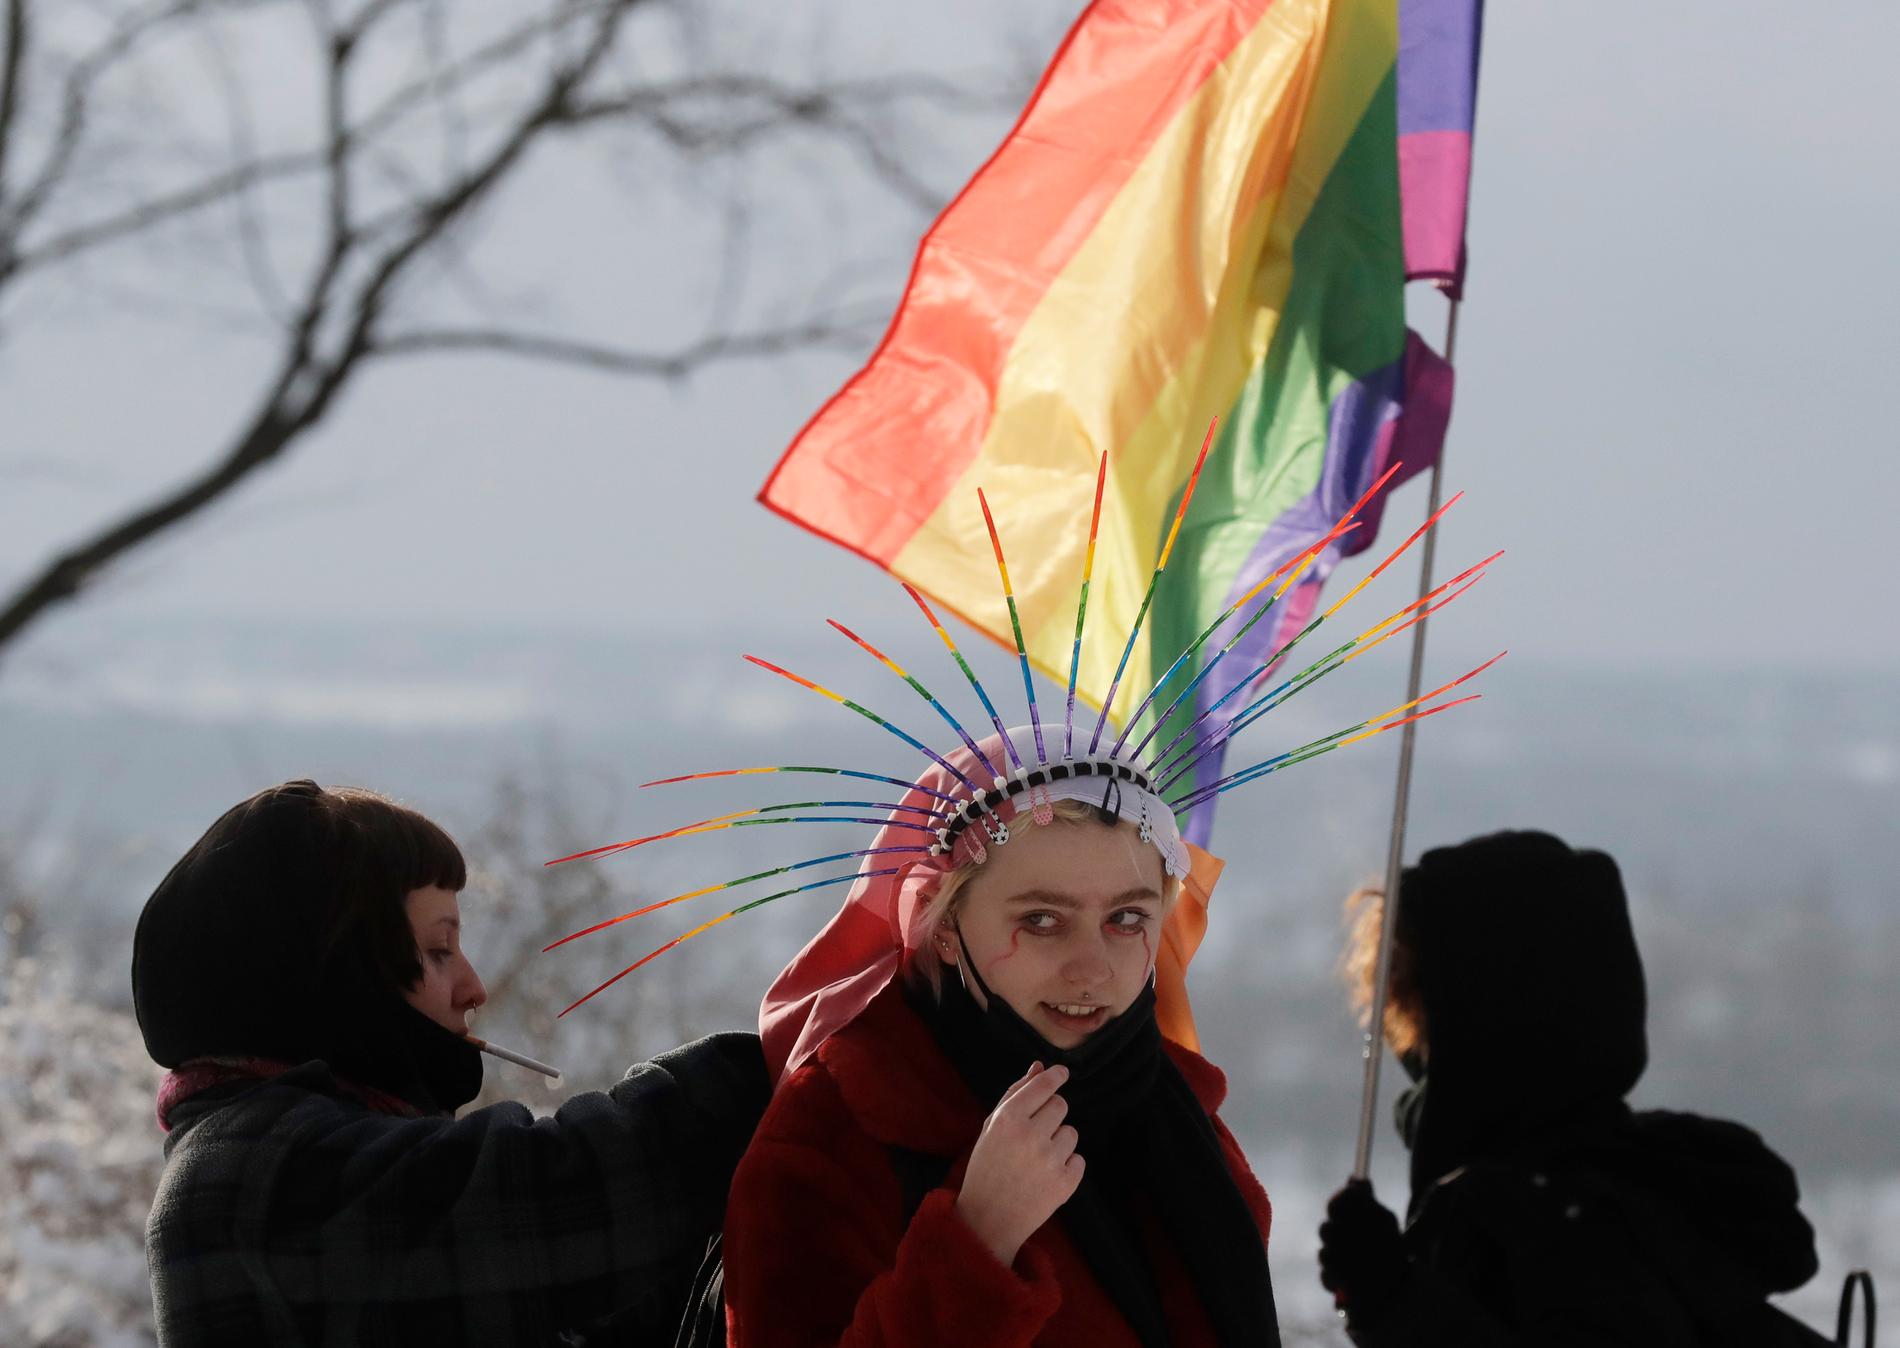 Aktivister demonstrerar för hbtqi-rättigheter vid en lokal domstol i Plock i Polen. Nu har EU-parlamentet utropat hela EU till en "frihetszon" för htbqi-personer, till stöd för alla dem som utsatts för homofobiskt hat och trakasserier. Arkivfoto.